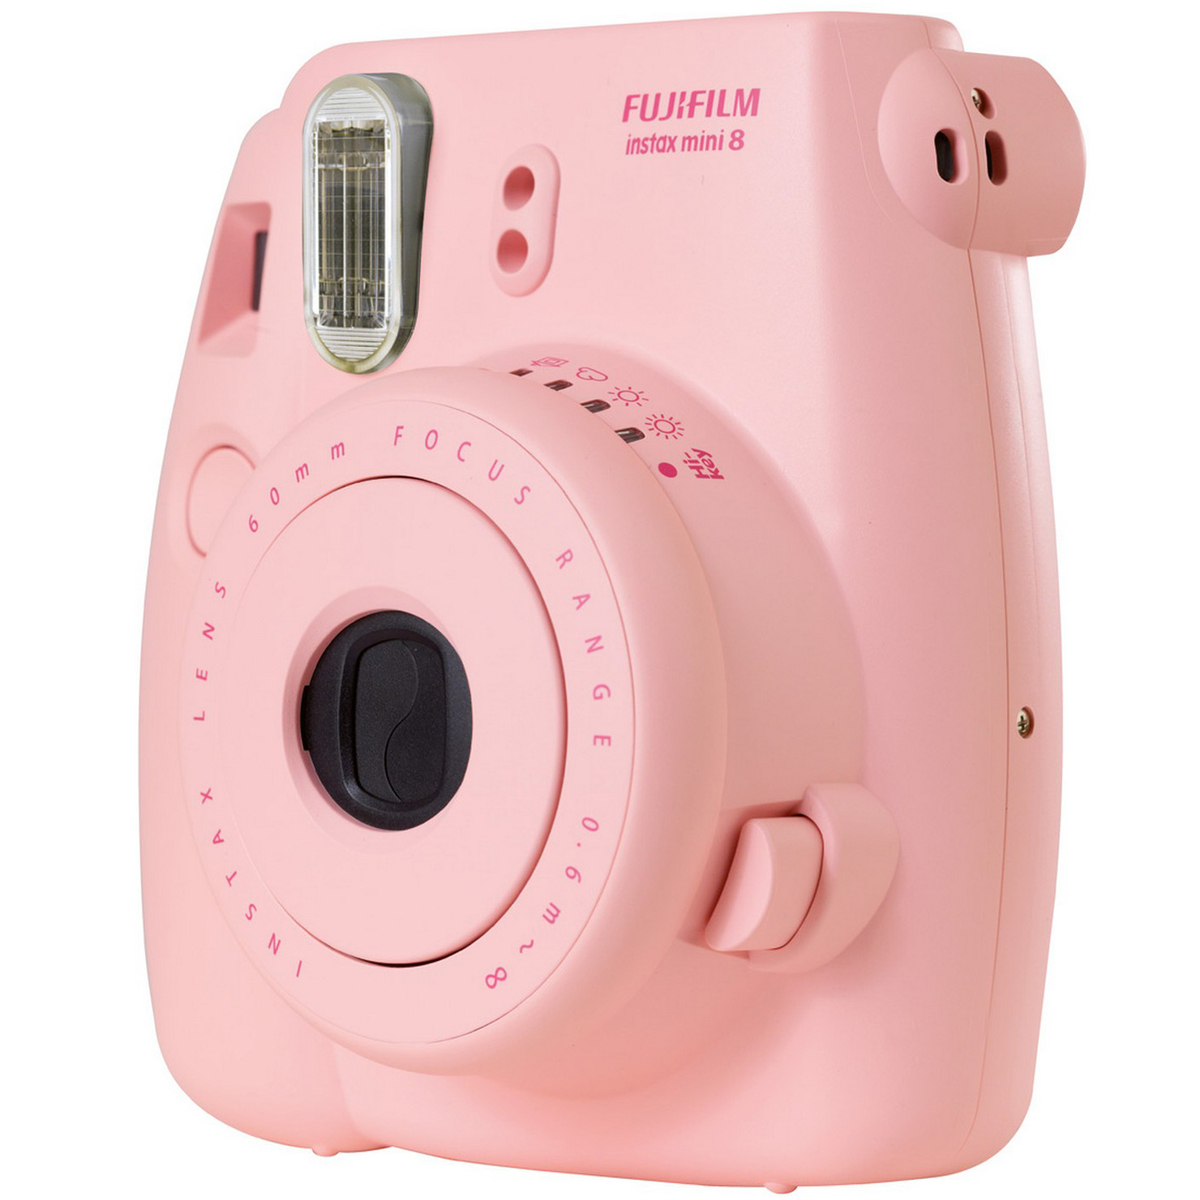 Fujifilm Instax Mini 8 Instant Camera Pink Online At Best Price Film Camera Lulu Ksa